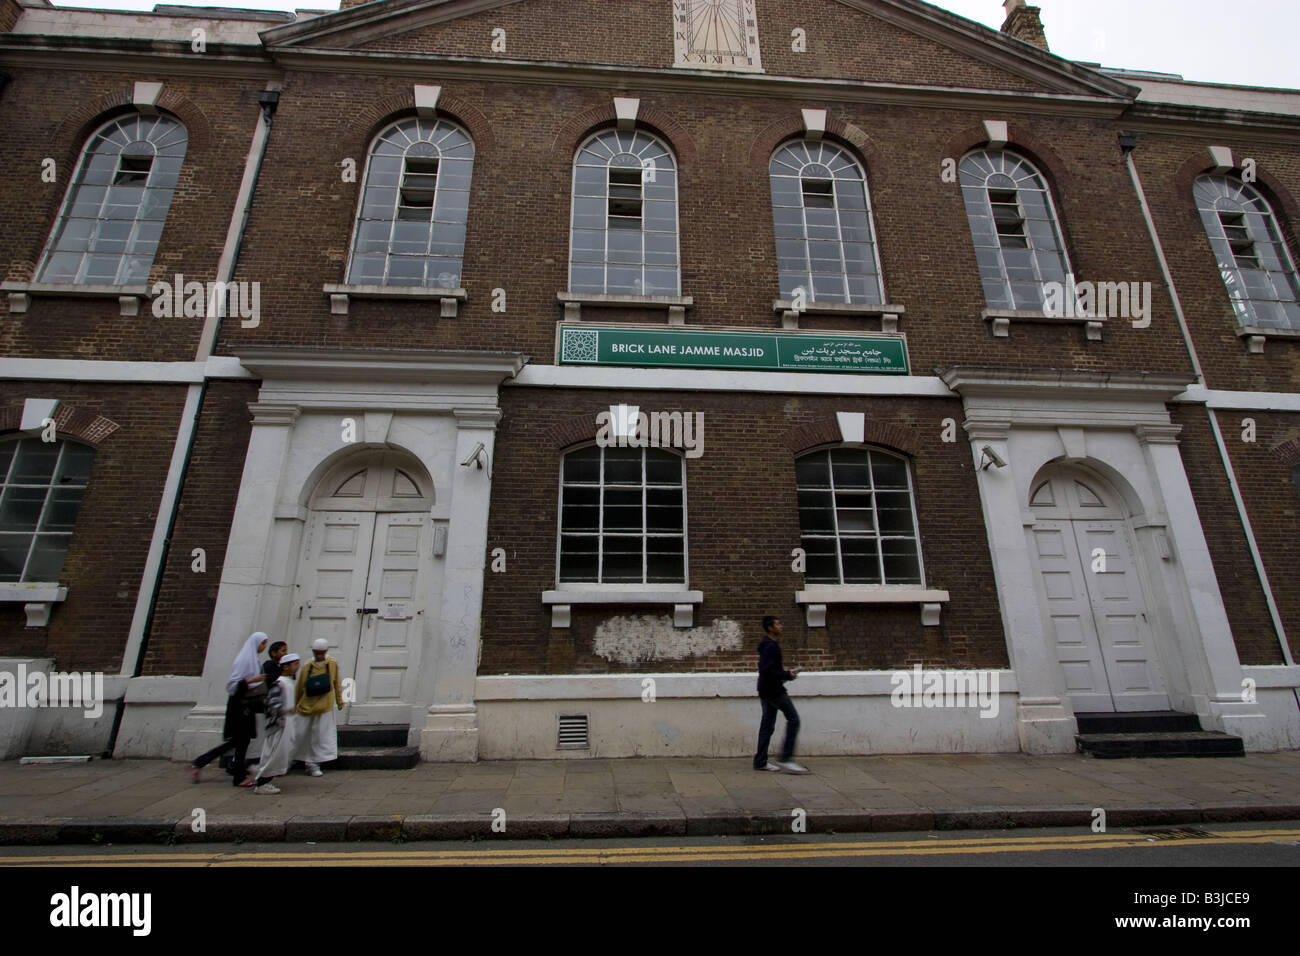 Brick Lane le Brick Lane Le Mosjid Jamme Jamme Masjid situé à Londres dans le Spitalfields Banque D'Images